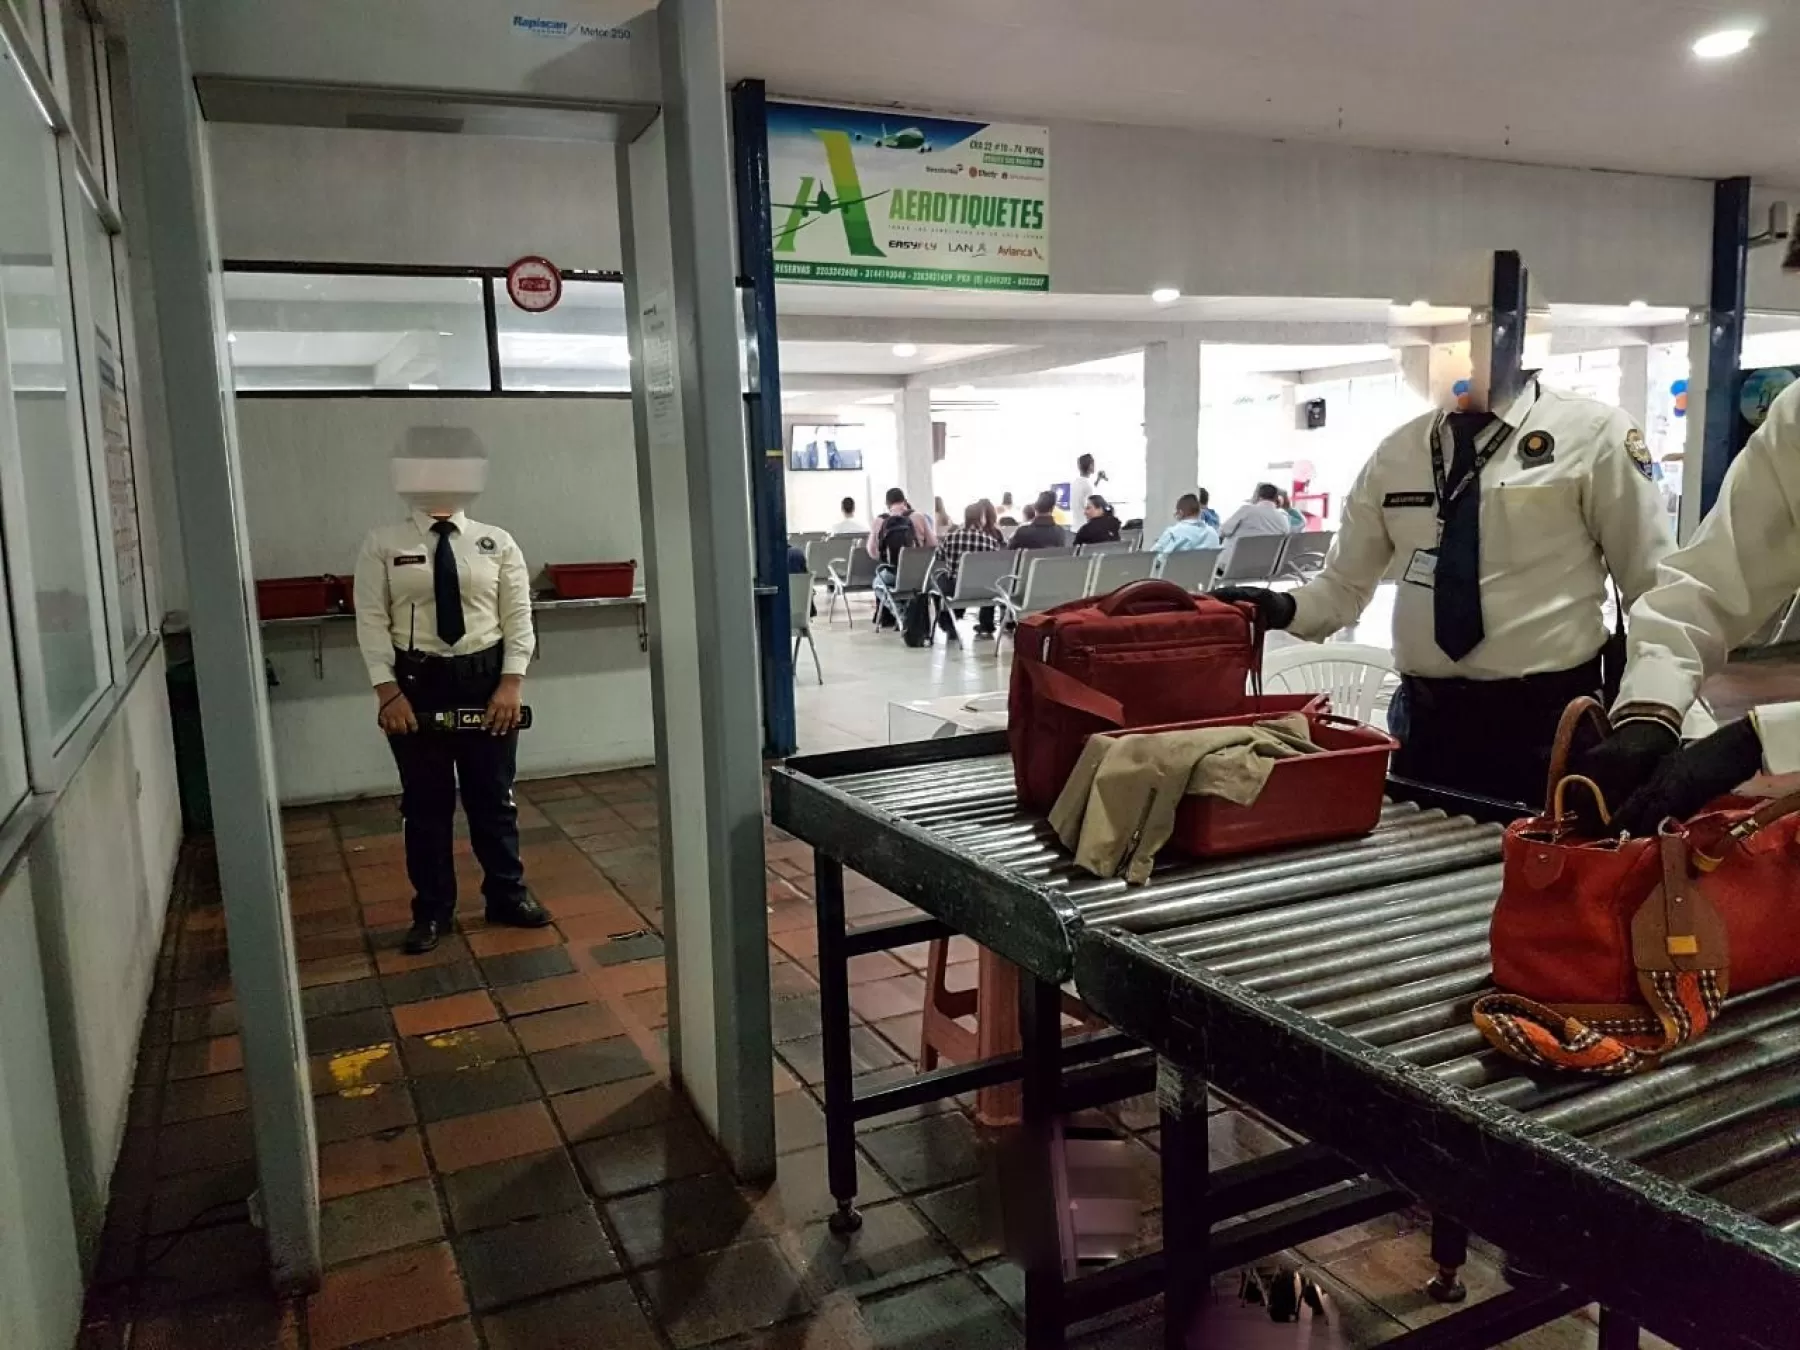 Diputados de Casanare denuncian fallas de seguridad en el aeropuerto El Alcaraván de Yopal.